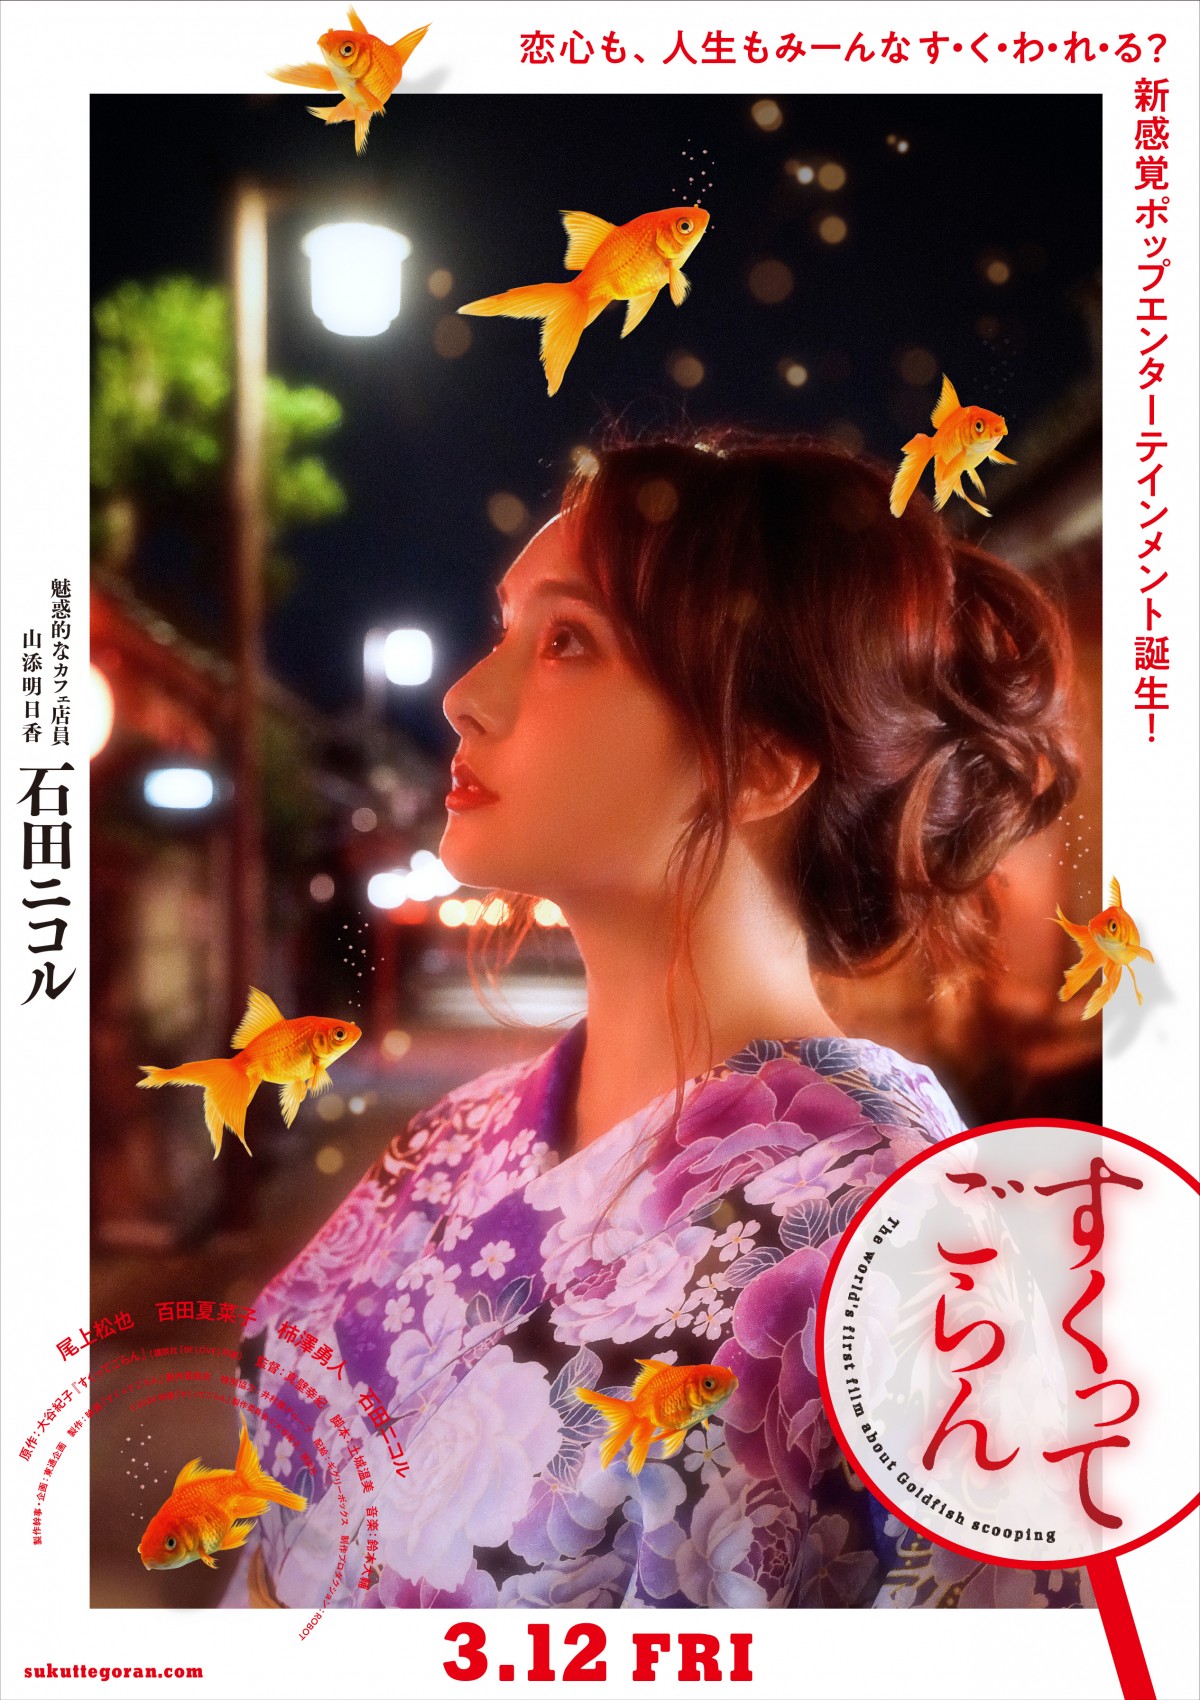 尾上松也×百田夏菜子『すくってごらん』 優雅で華麗なキャラクターポスター完成